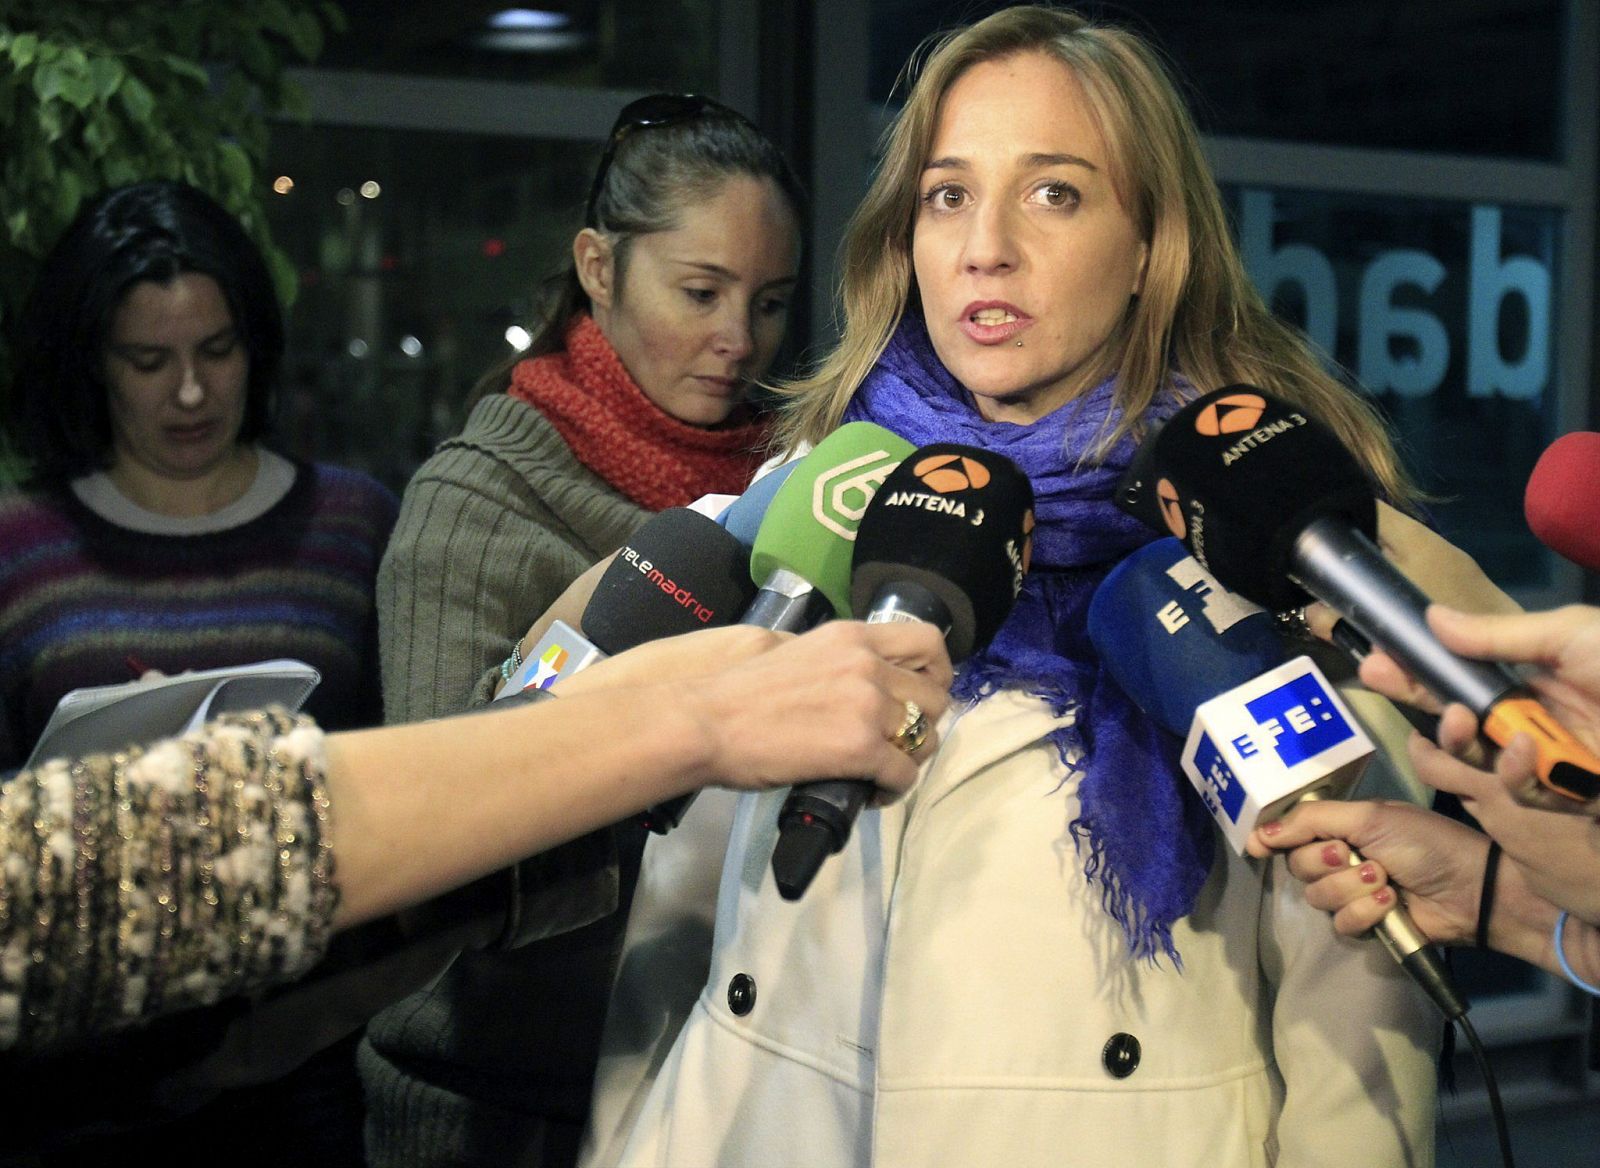 La diputada autonómica de IU Tania Sánchez, candidata de IU a la Comunidad de Madrid en las elecciones de mayo, atiende a los medios.